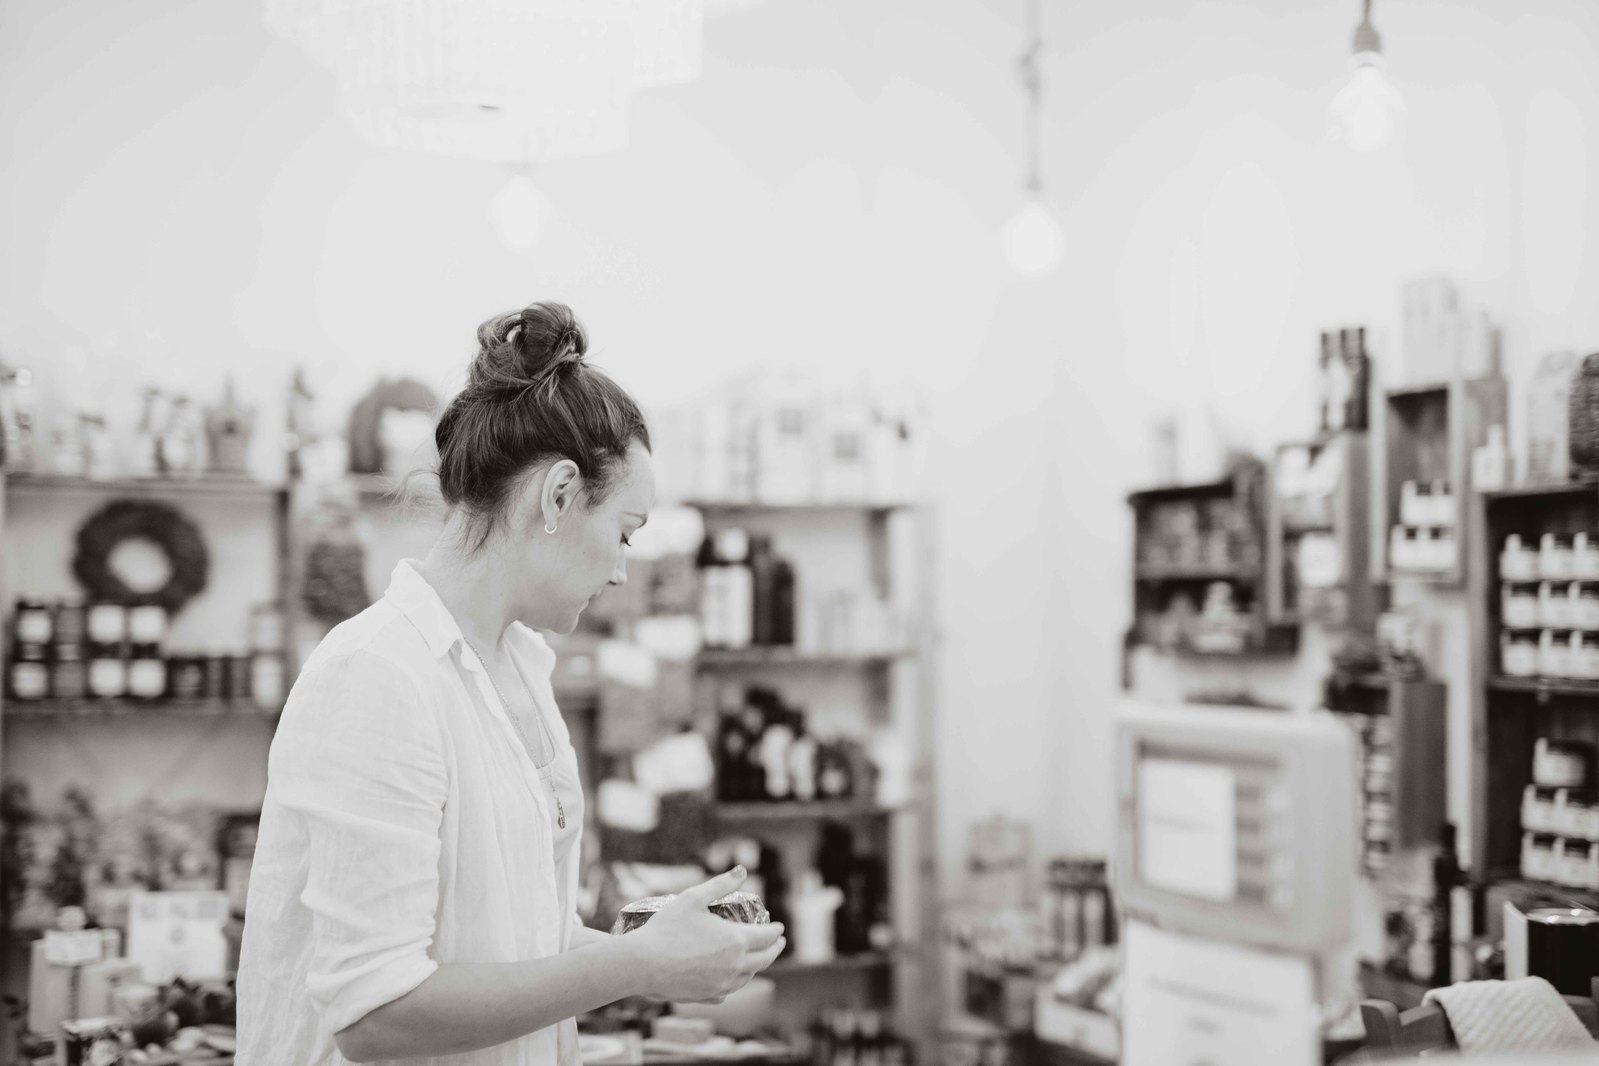 Kvinna i vit skjorta och mörkt hår i uppsatt i en knut håller en skål handen, i bakgrunden butikshyllor med varor.